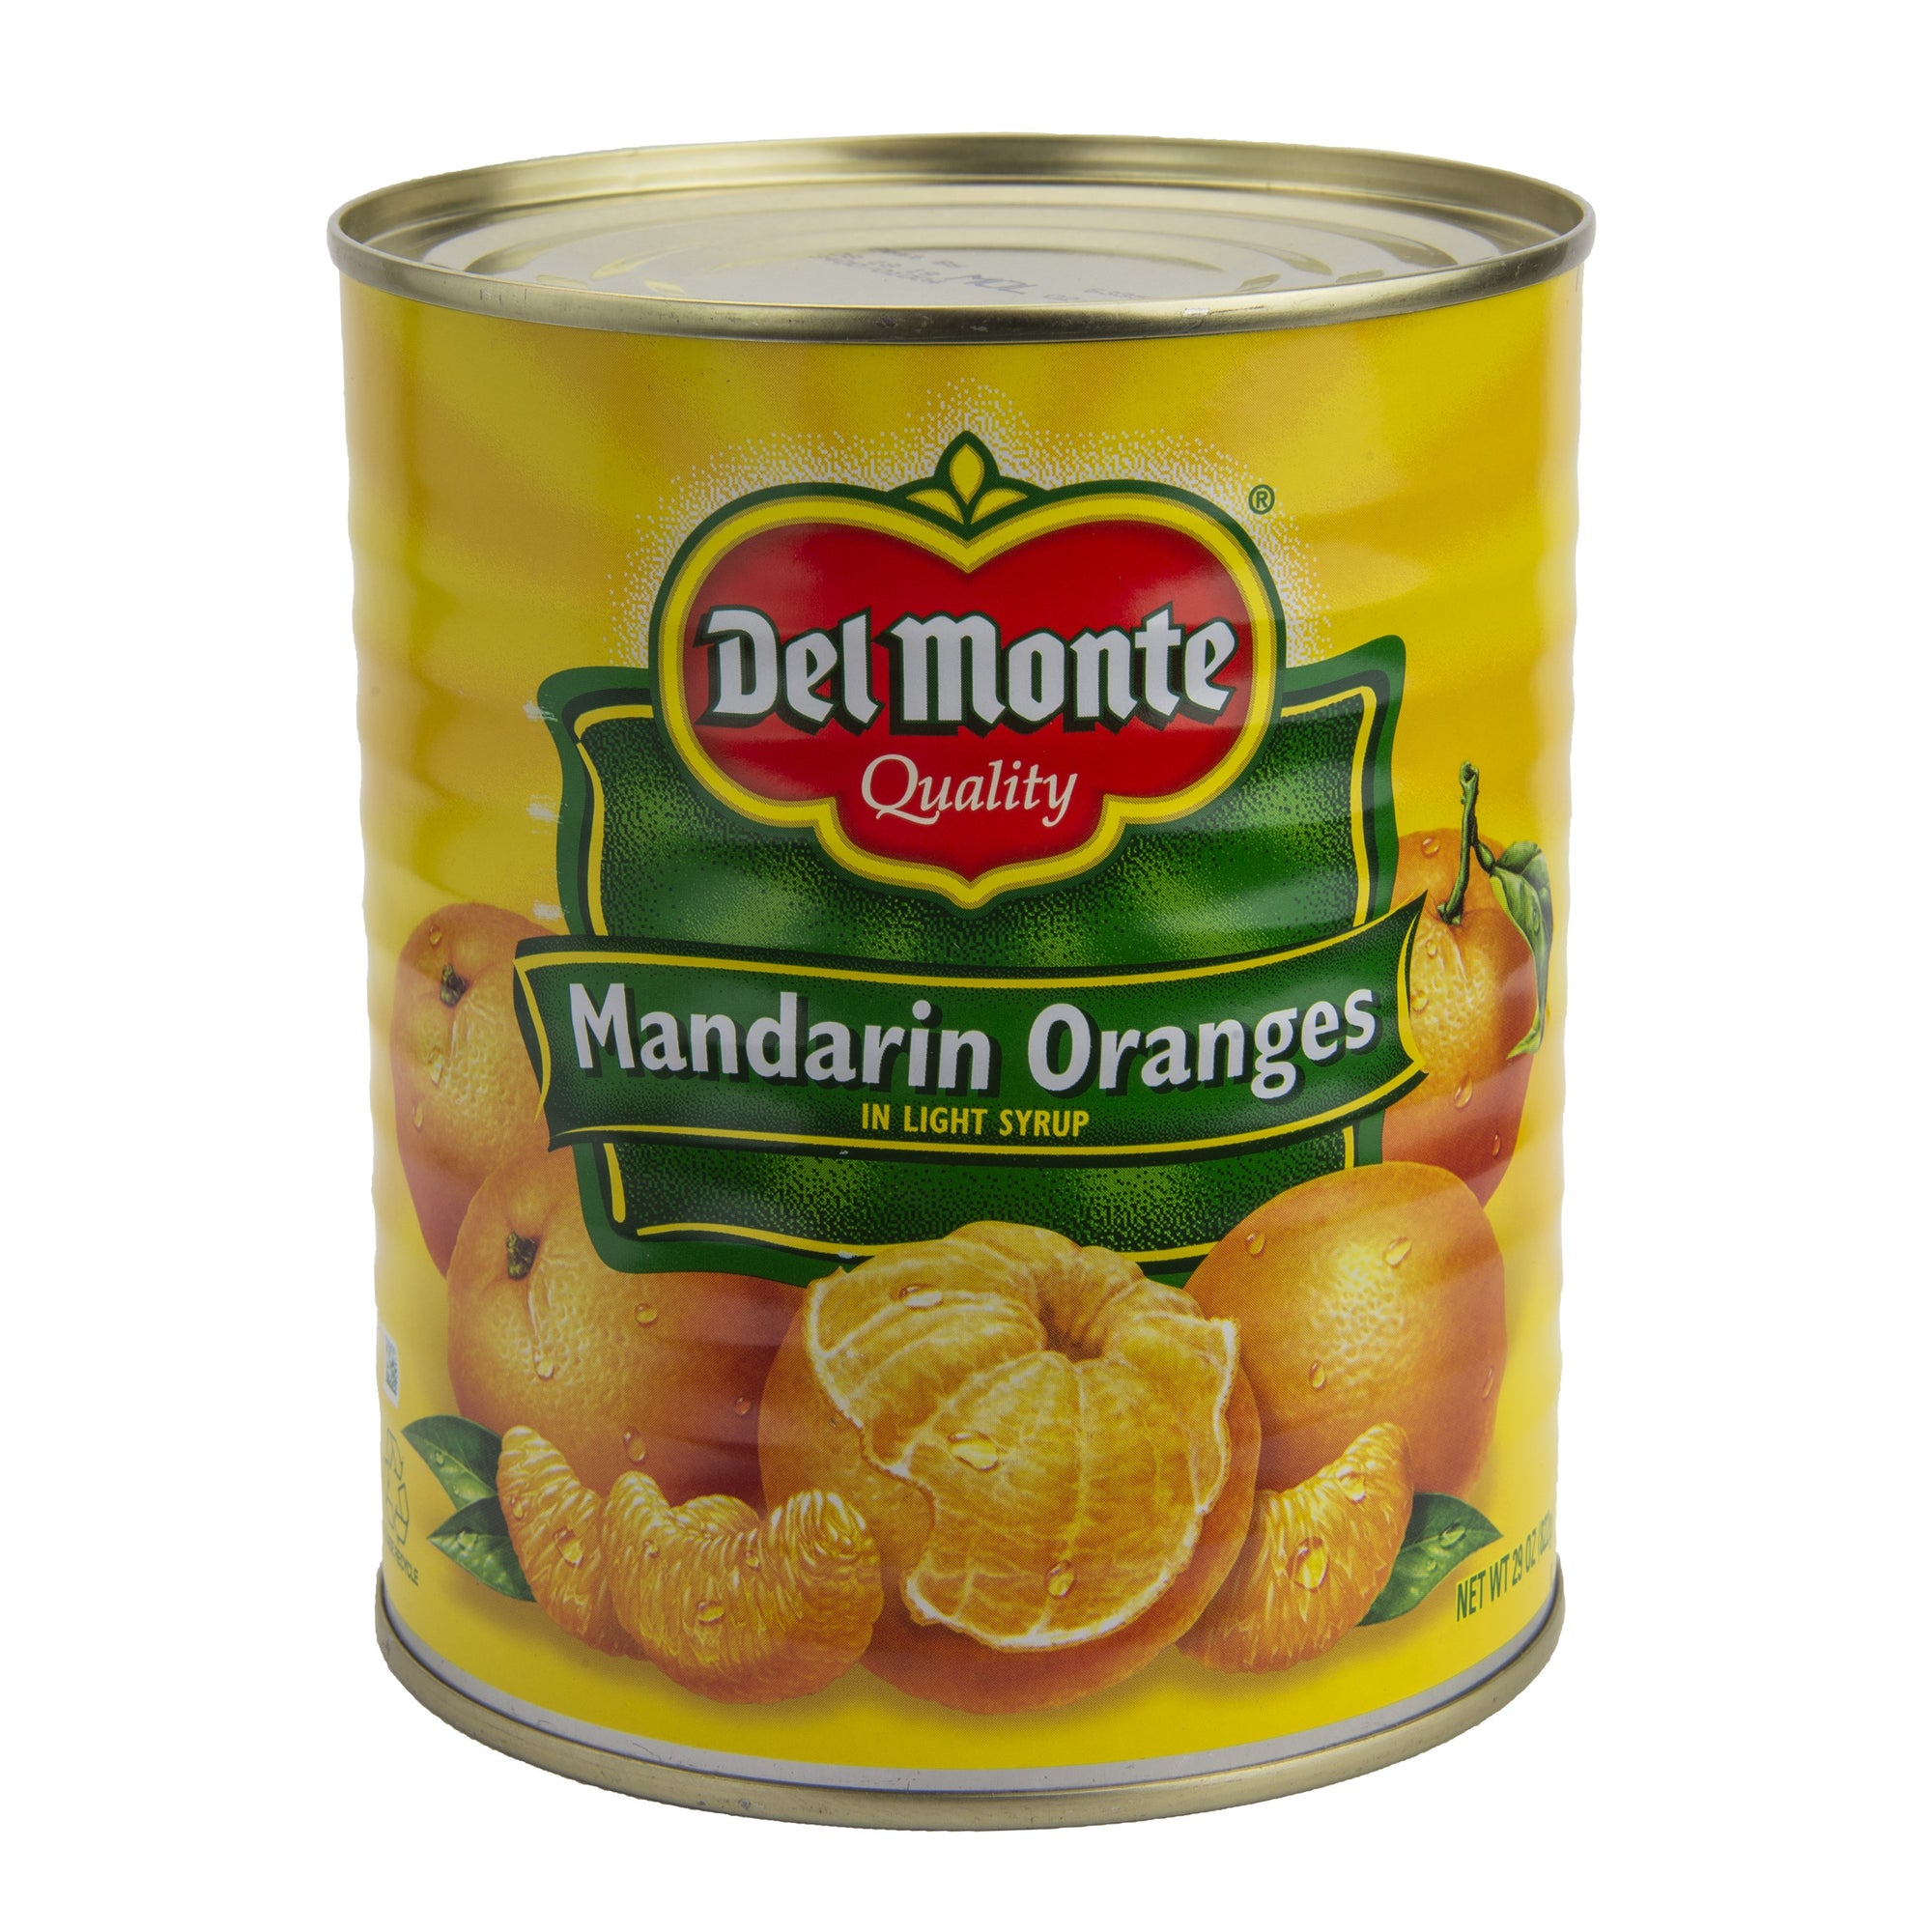 Del Monte(R) Mandarin Oranges 12/29 oz. Can